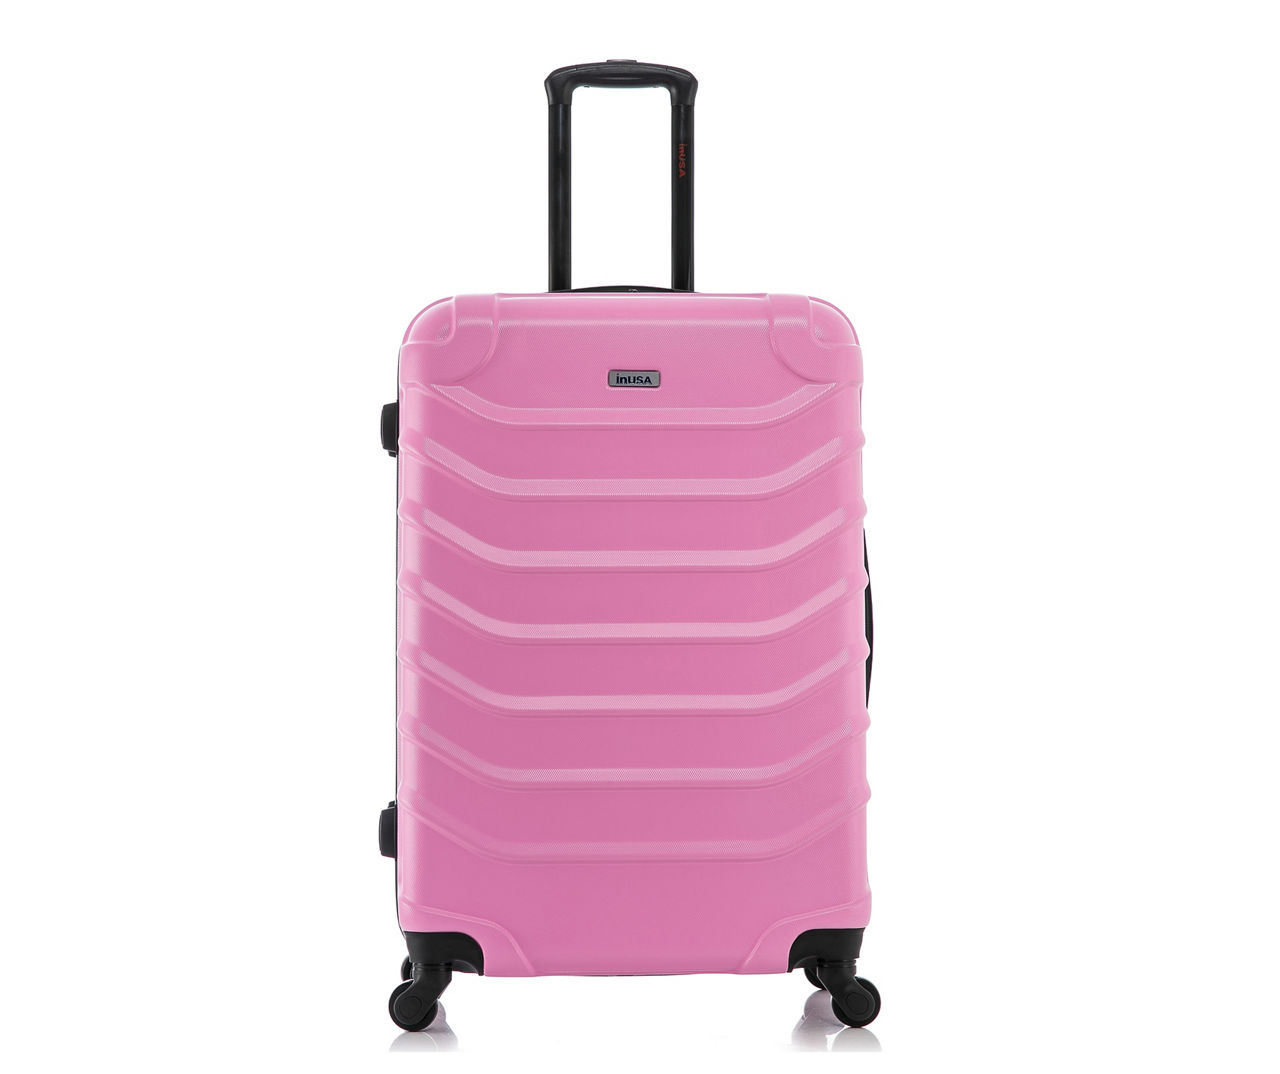 Endurance Pink 28" Ridged Hardside Spinner Suitcase